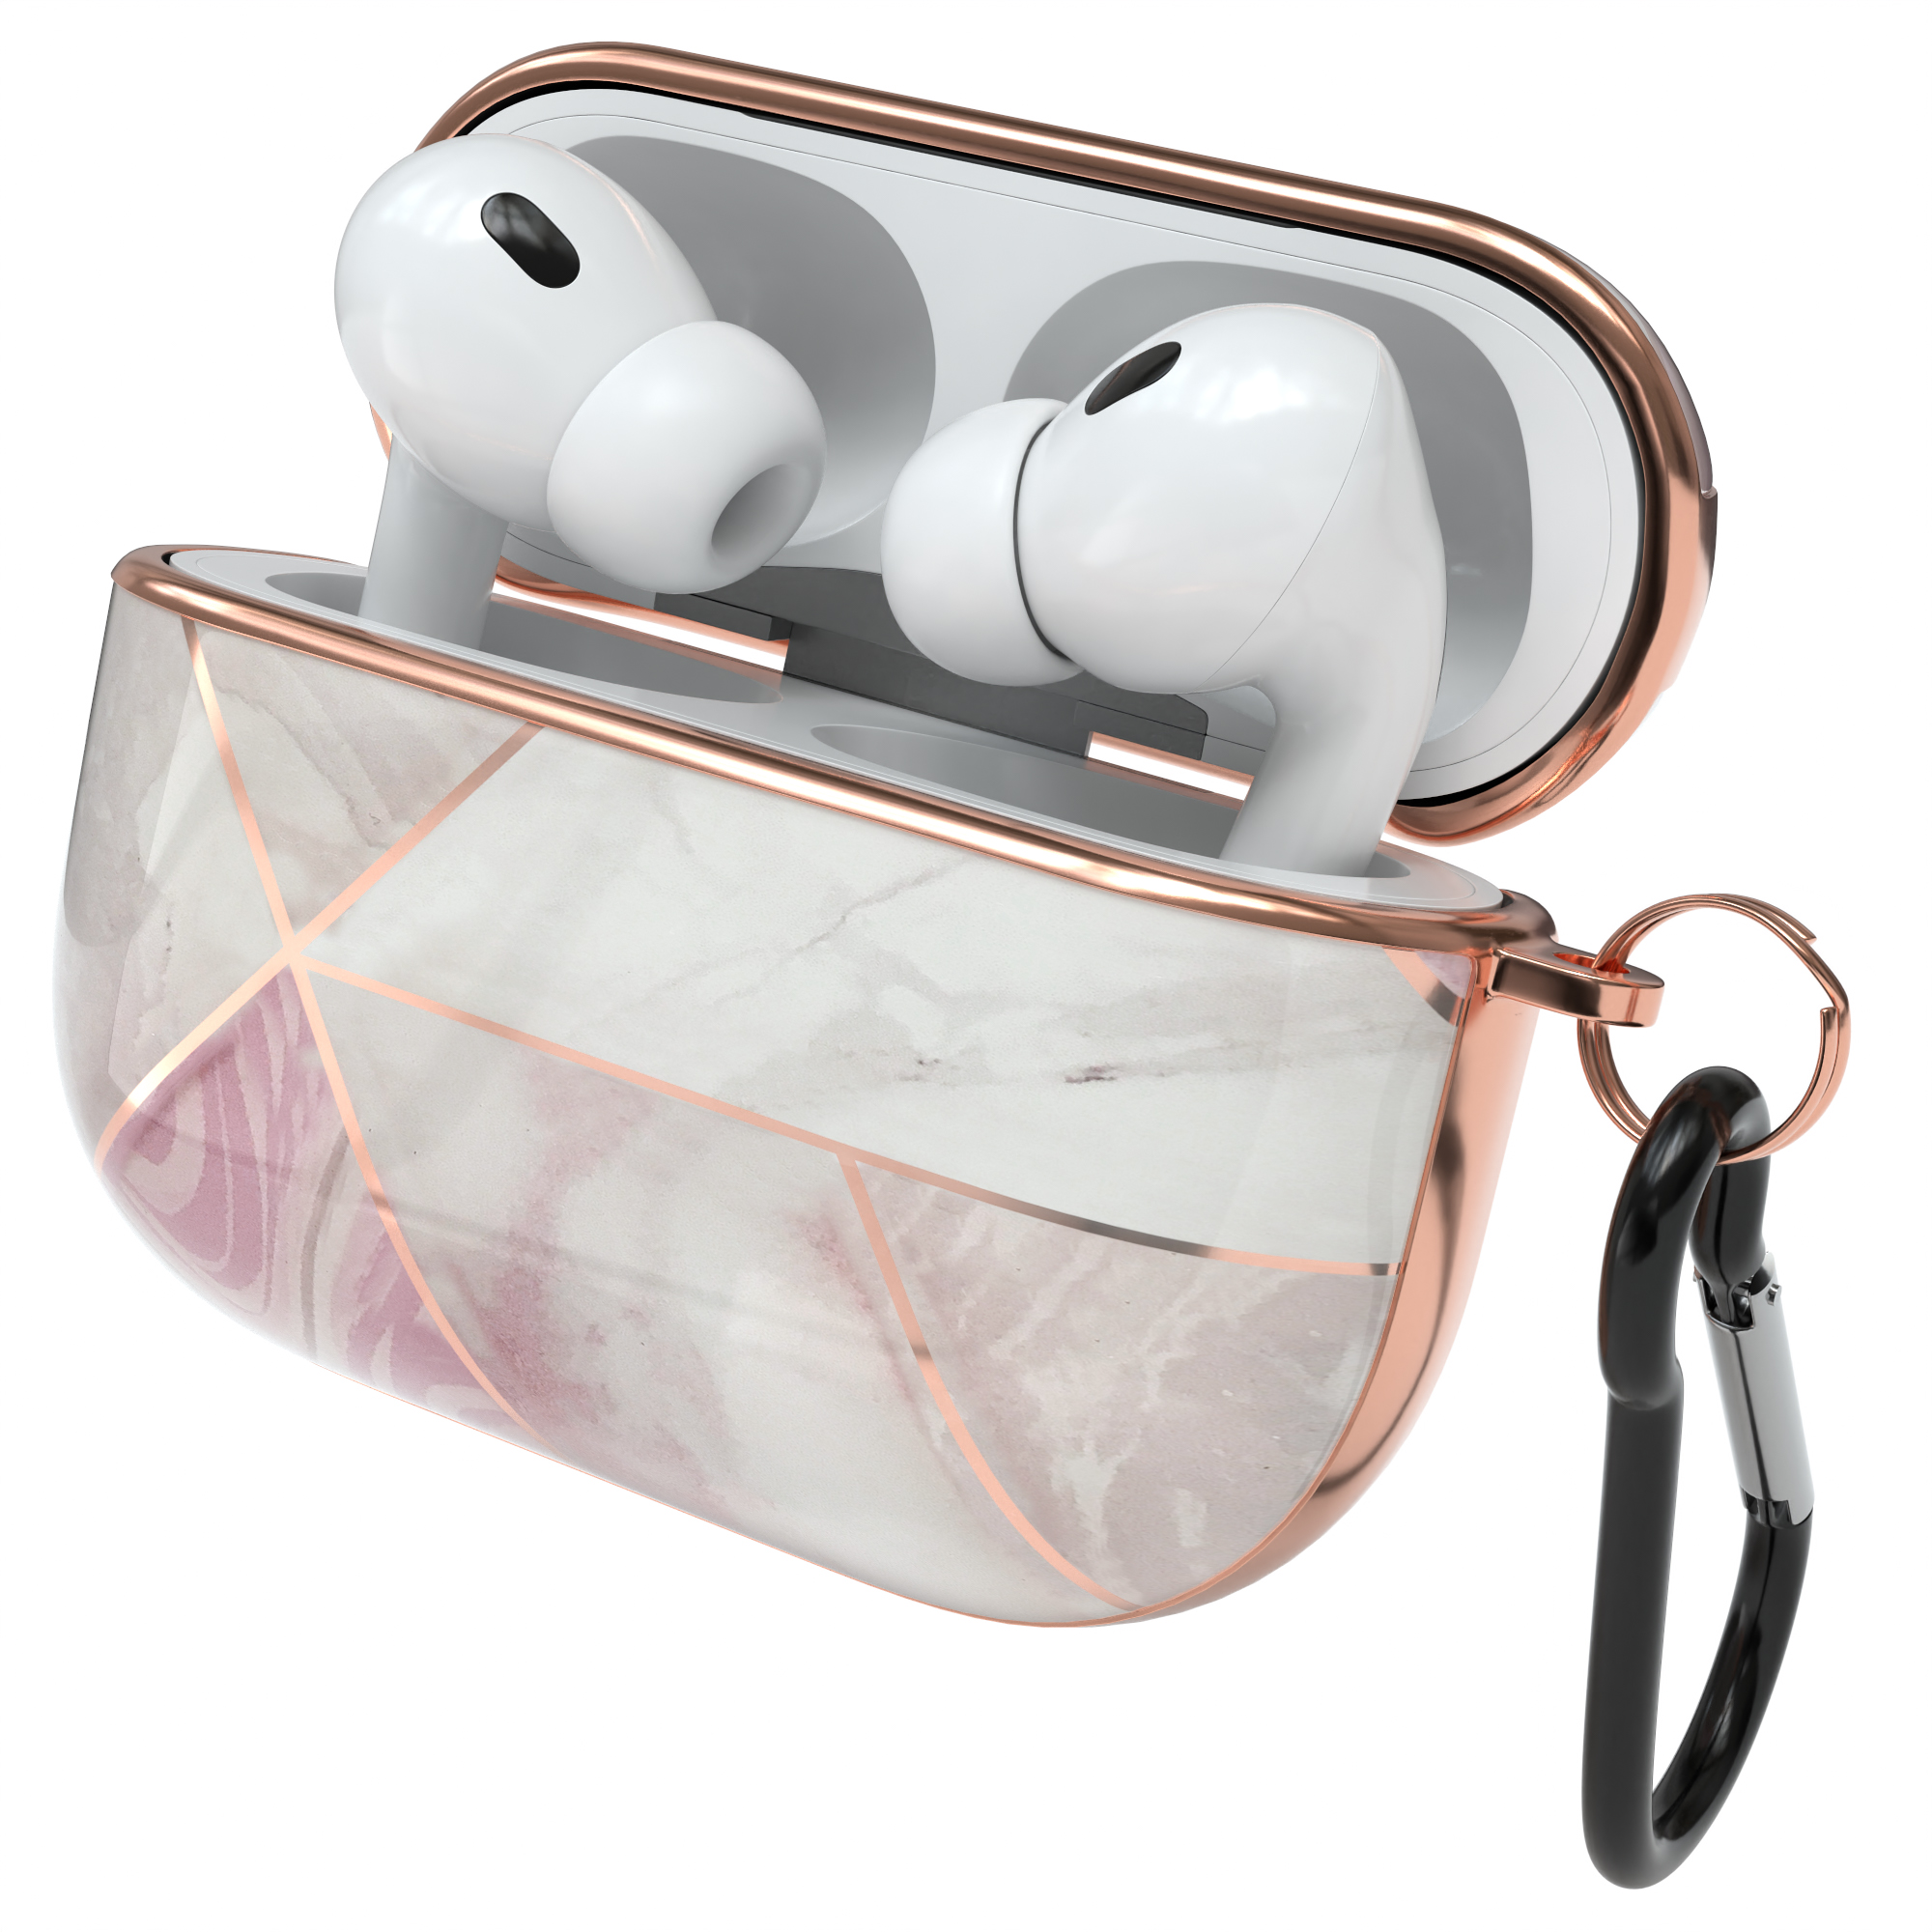 EAZY CASE AirPods Pro Apple 2 / Roségold Weiß Sleeve Case Motiv für: passend Schutzhülle IMD